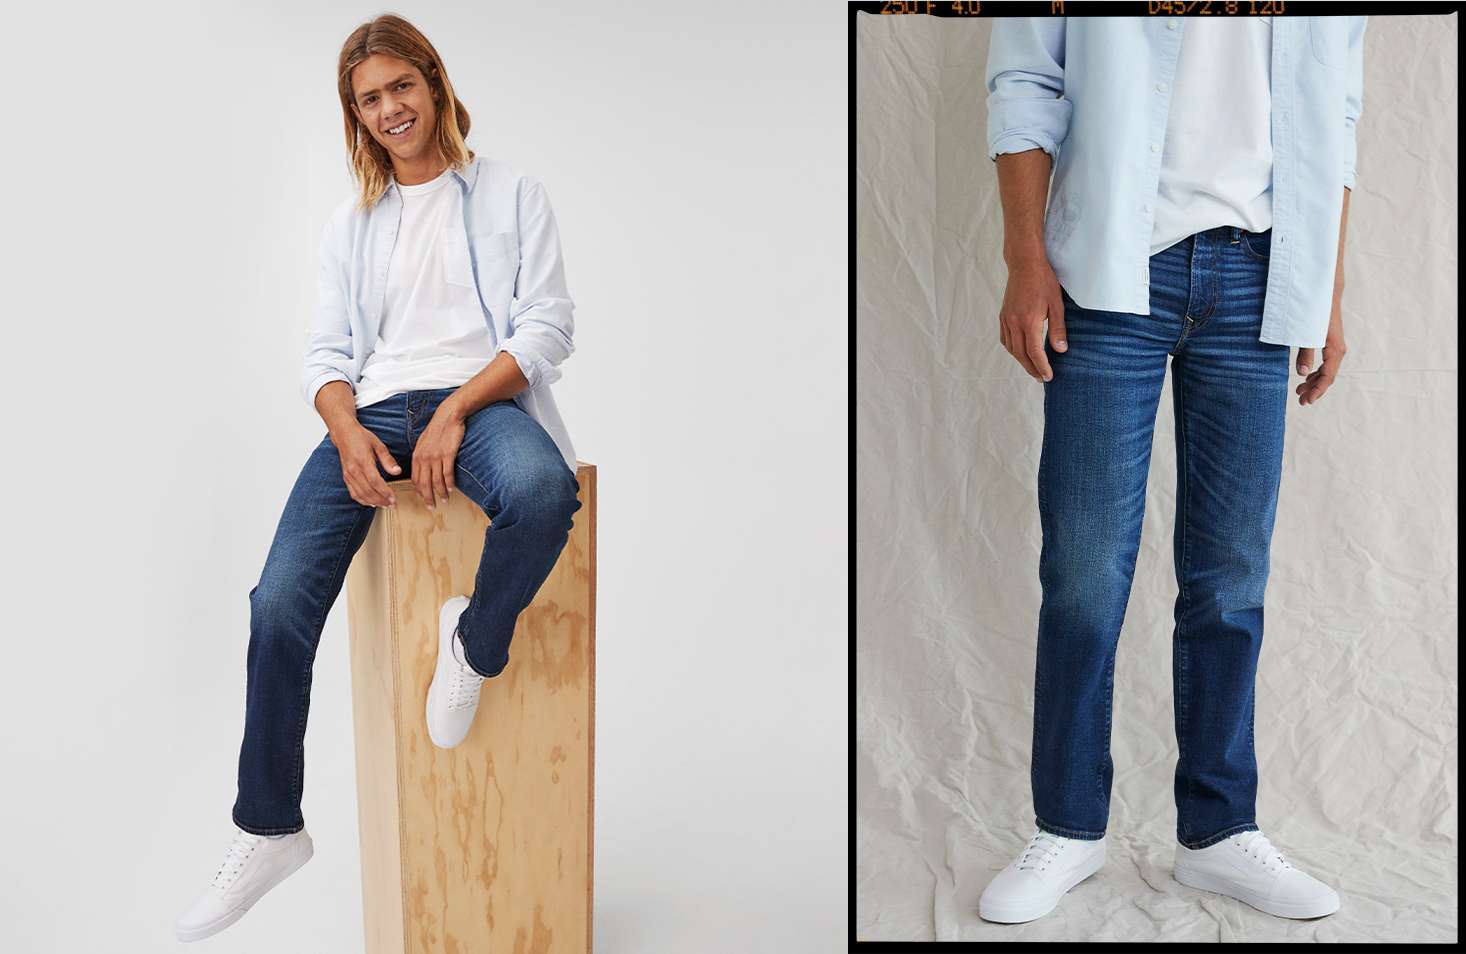 Men's Straight Leg Jeans